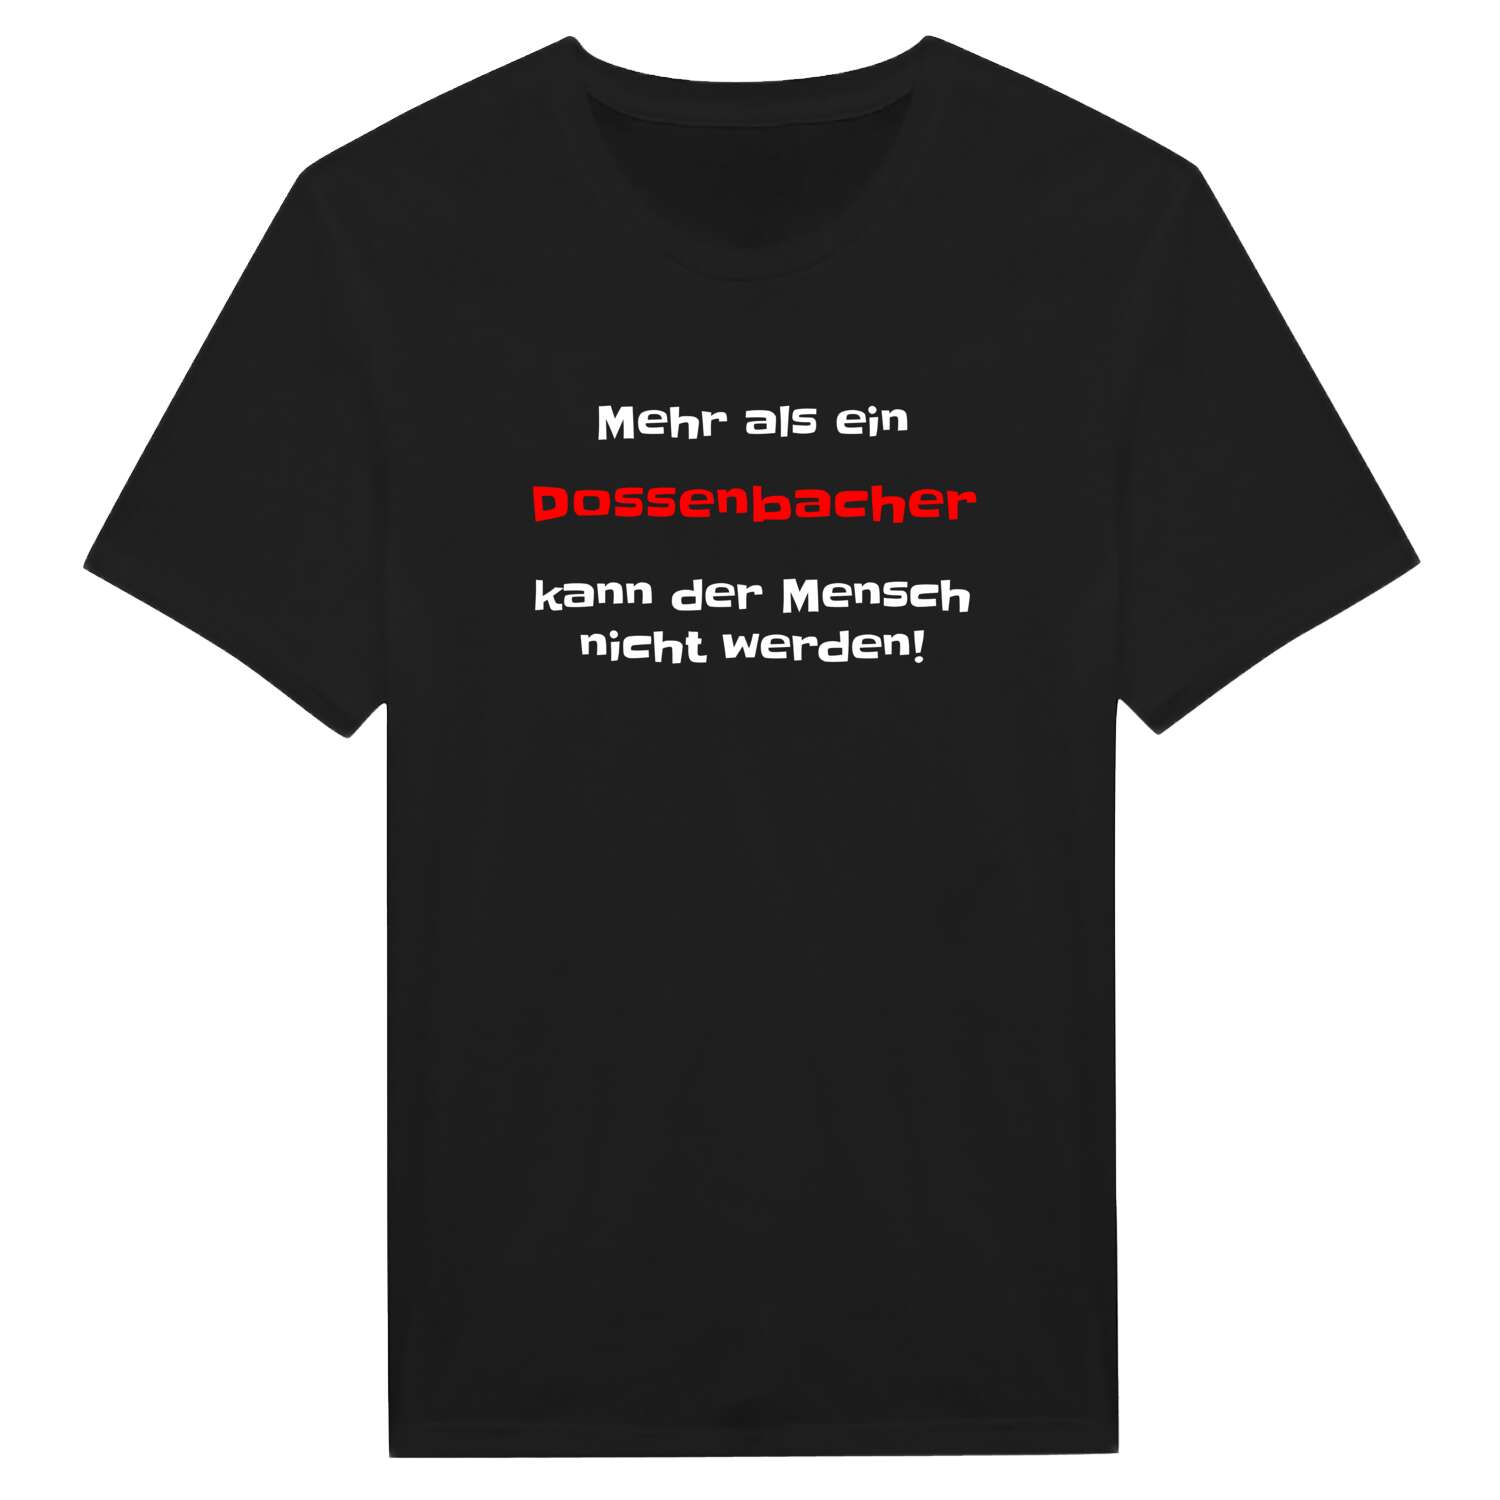 Dossenbach T-Shirt »Mehr als ein«